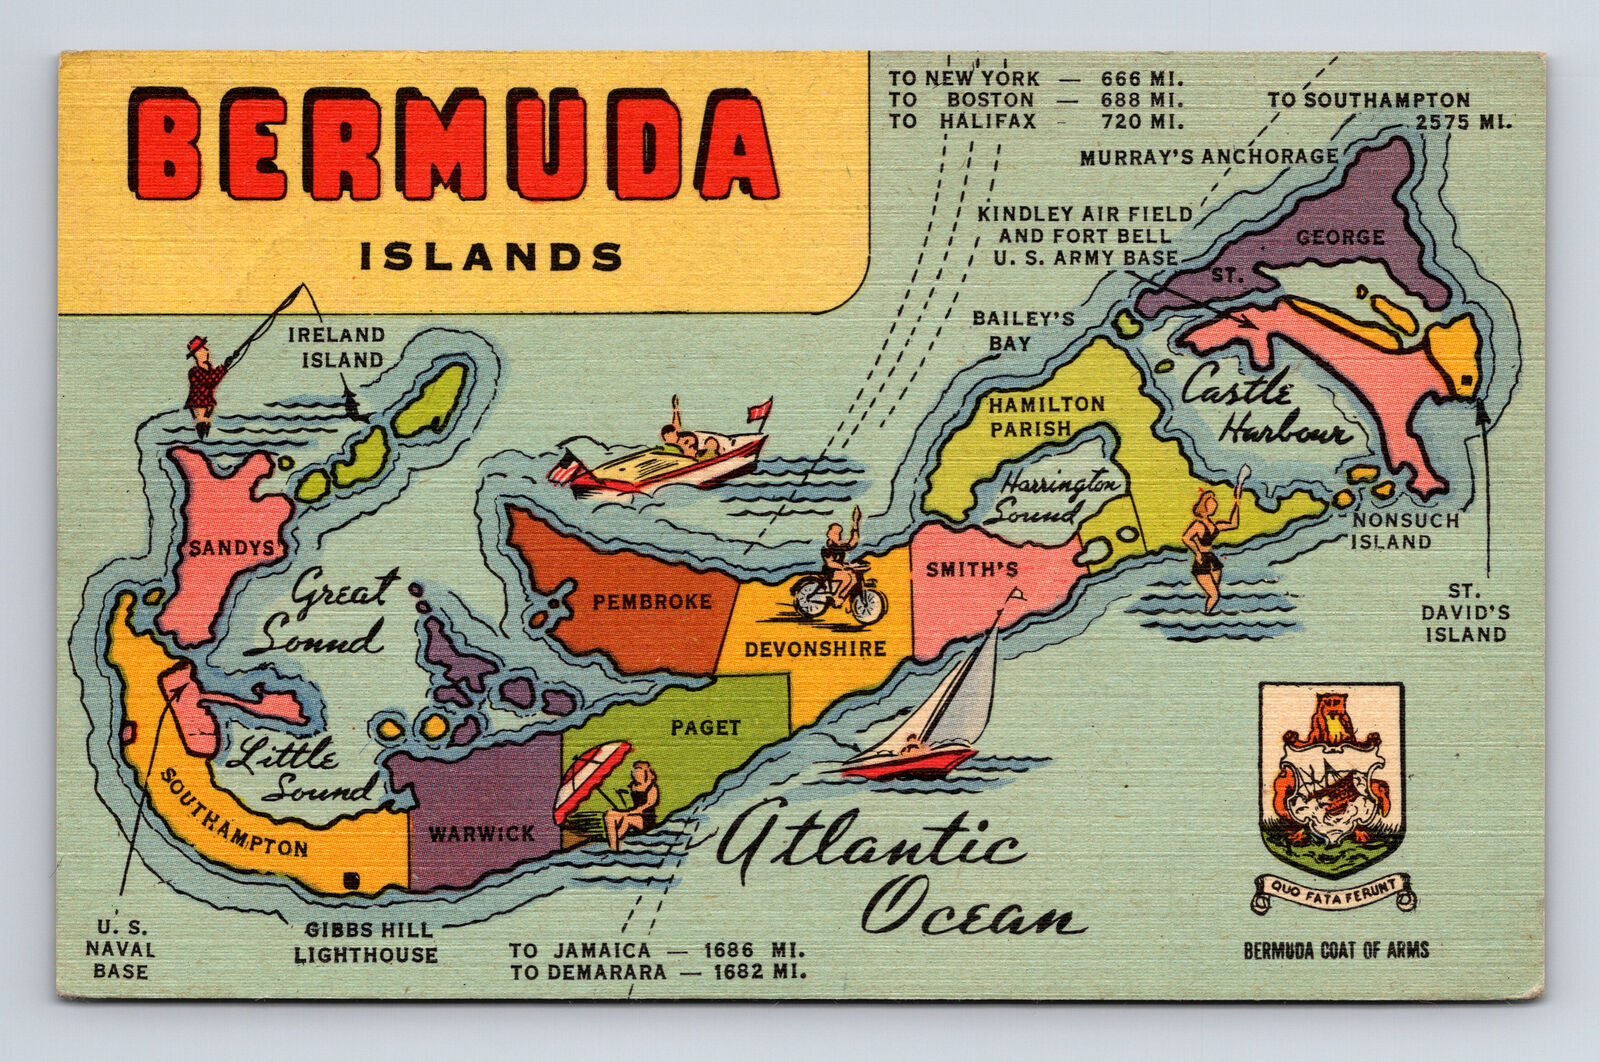 c1957 Bermuda Islands Pictorial Tourist Map Bermuda Postcard